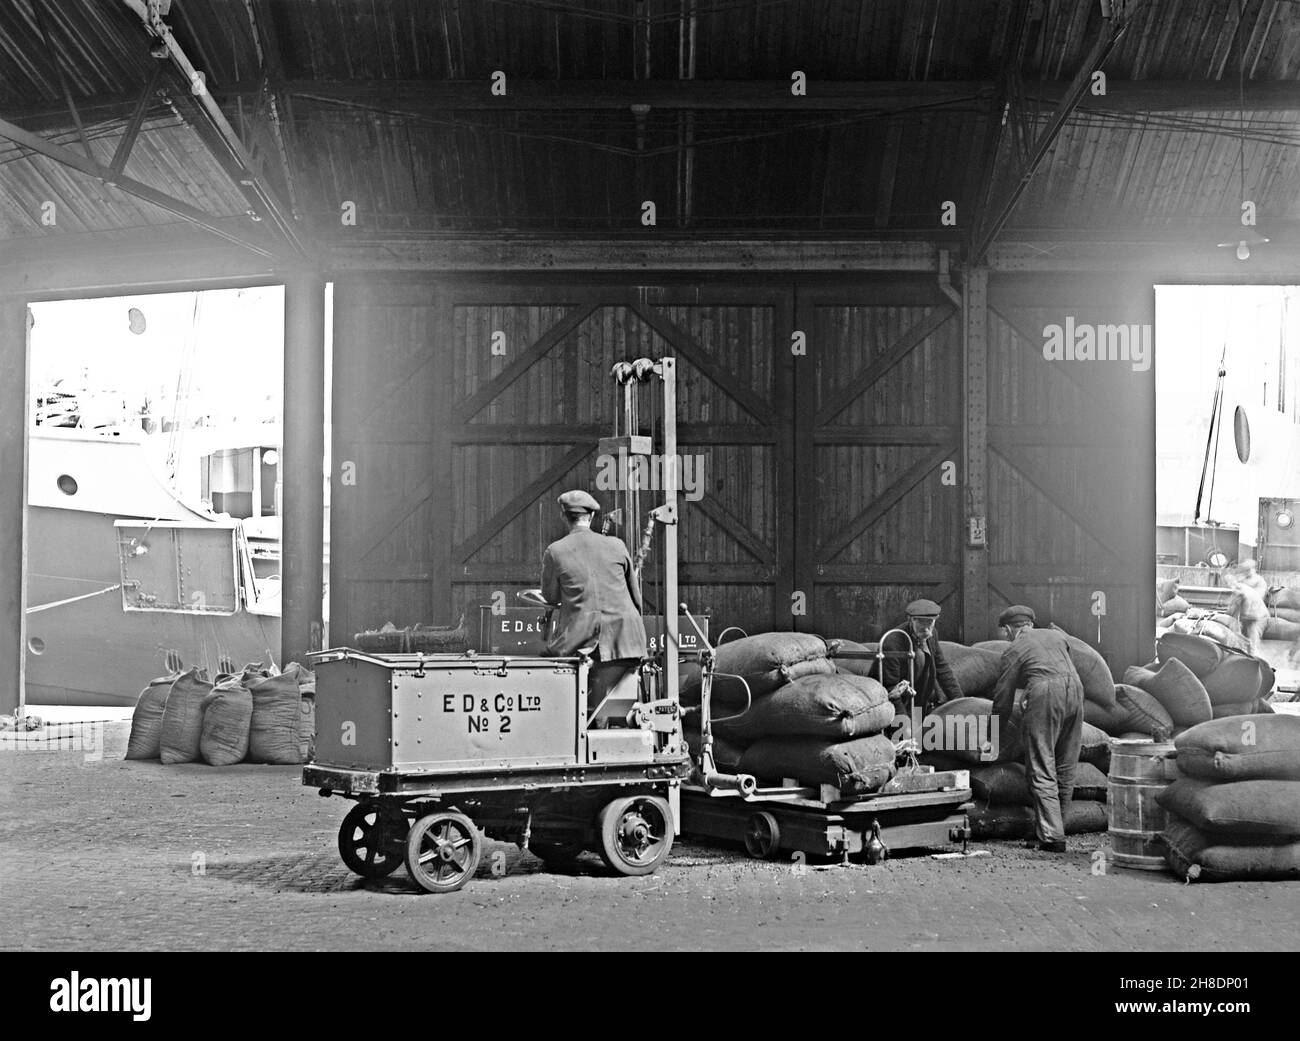 Transport par batterie – ici, un chariot élévateur est utilisé pour soulever des sacs sur une machine de pesage mobile chez E D and Co Ltd, une société d'expédition et d'entreposage à Liverpool Docks, Lancashire, Angleterre, Royaume-Uni dans les premières années du XXe siècle.Dans les premières années du transport automobile les véhicules électriques étaient une bonne option par rapport à ceux à essence pour le transport commercial sur de courtes distances, comme le déplacement de marchandises dans les usines.Cette photo est tirée d'un vieux négatif en verre original – une photographie vintage du XXe siècle. Banque D'Images